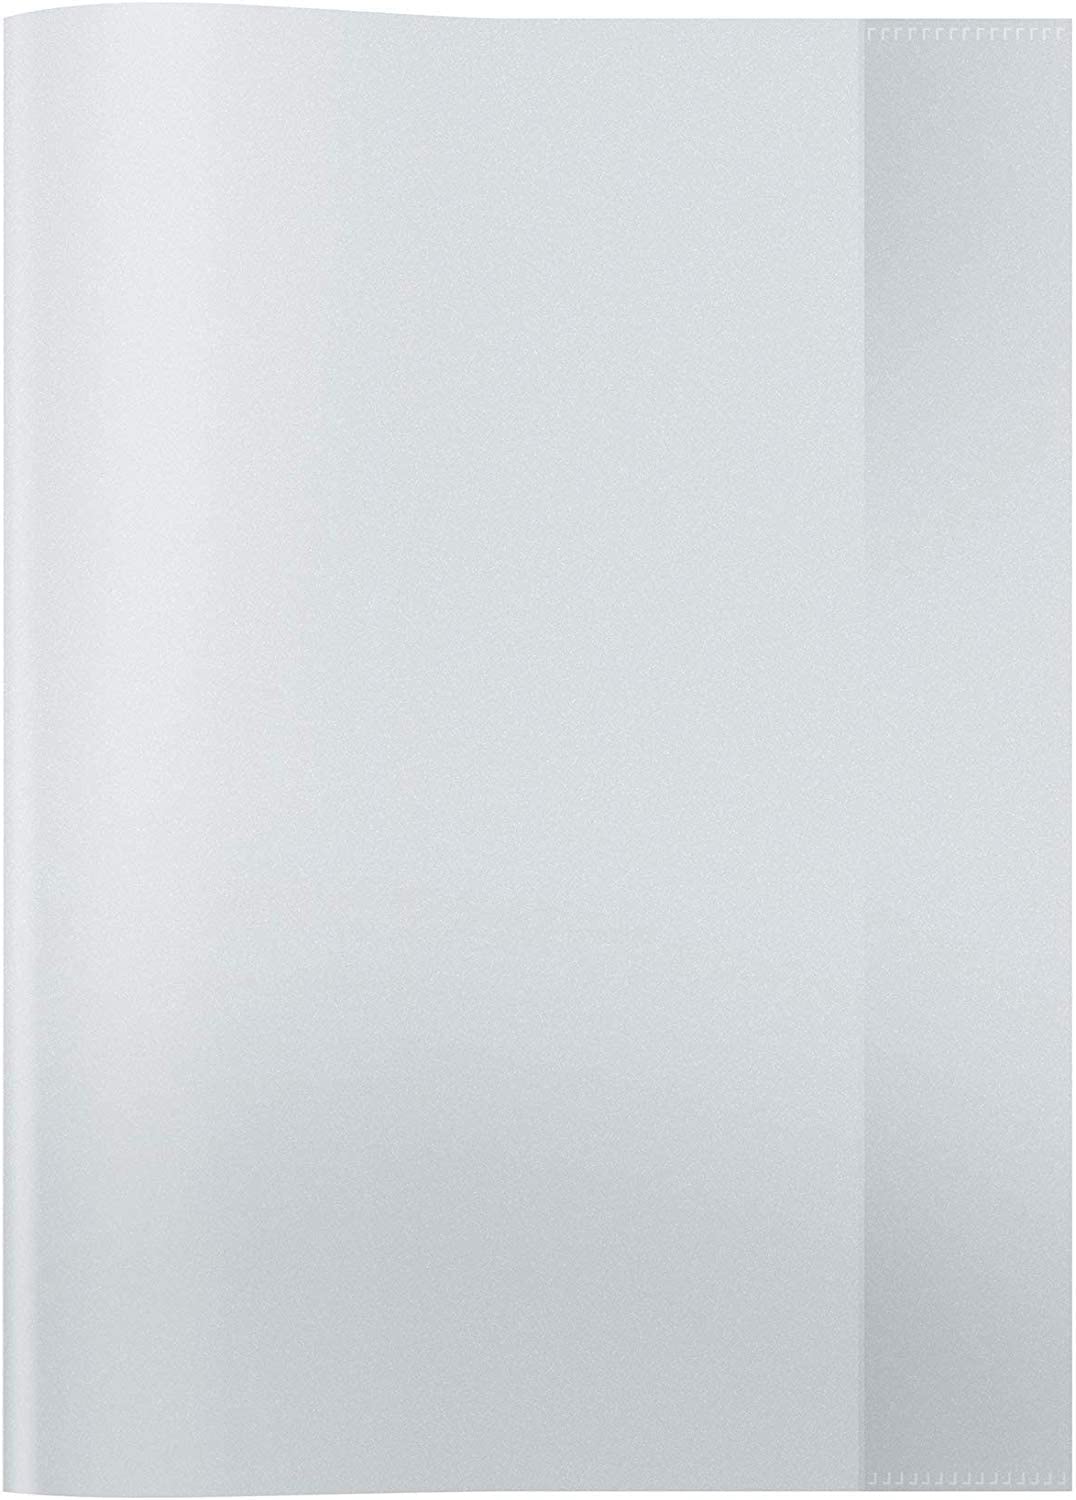 HERMA Heftschoner, DIN A4, aus PP, transparent-farblos